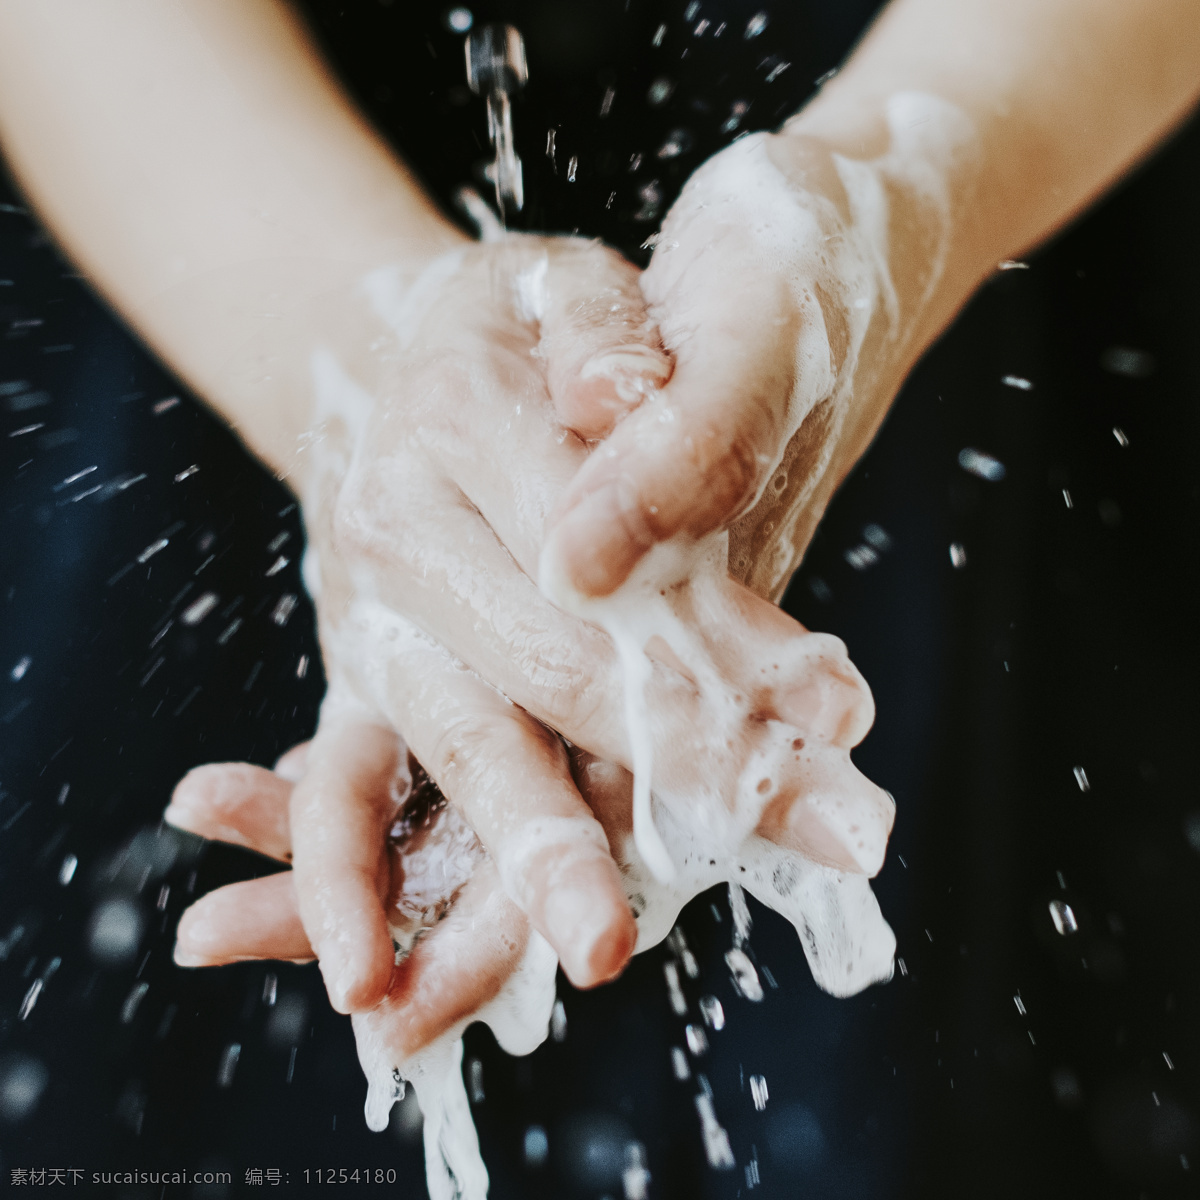 洗手 新冠 卫生 防护 疫情 防疫 生活百科 生活素材